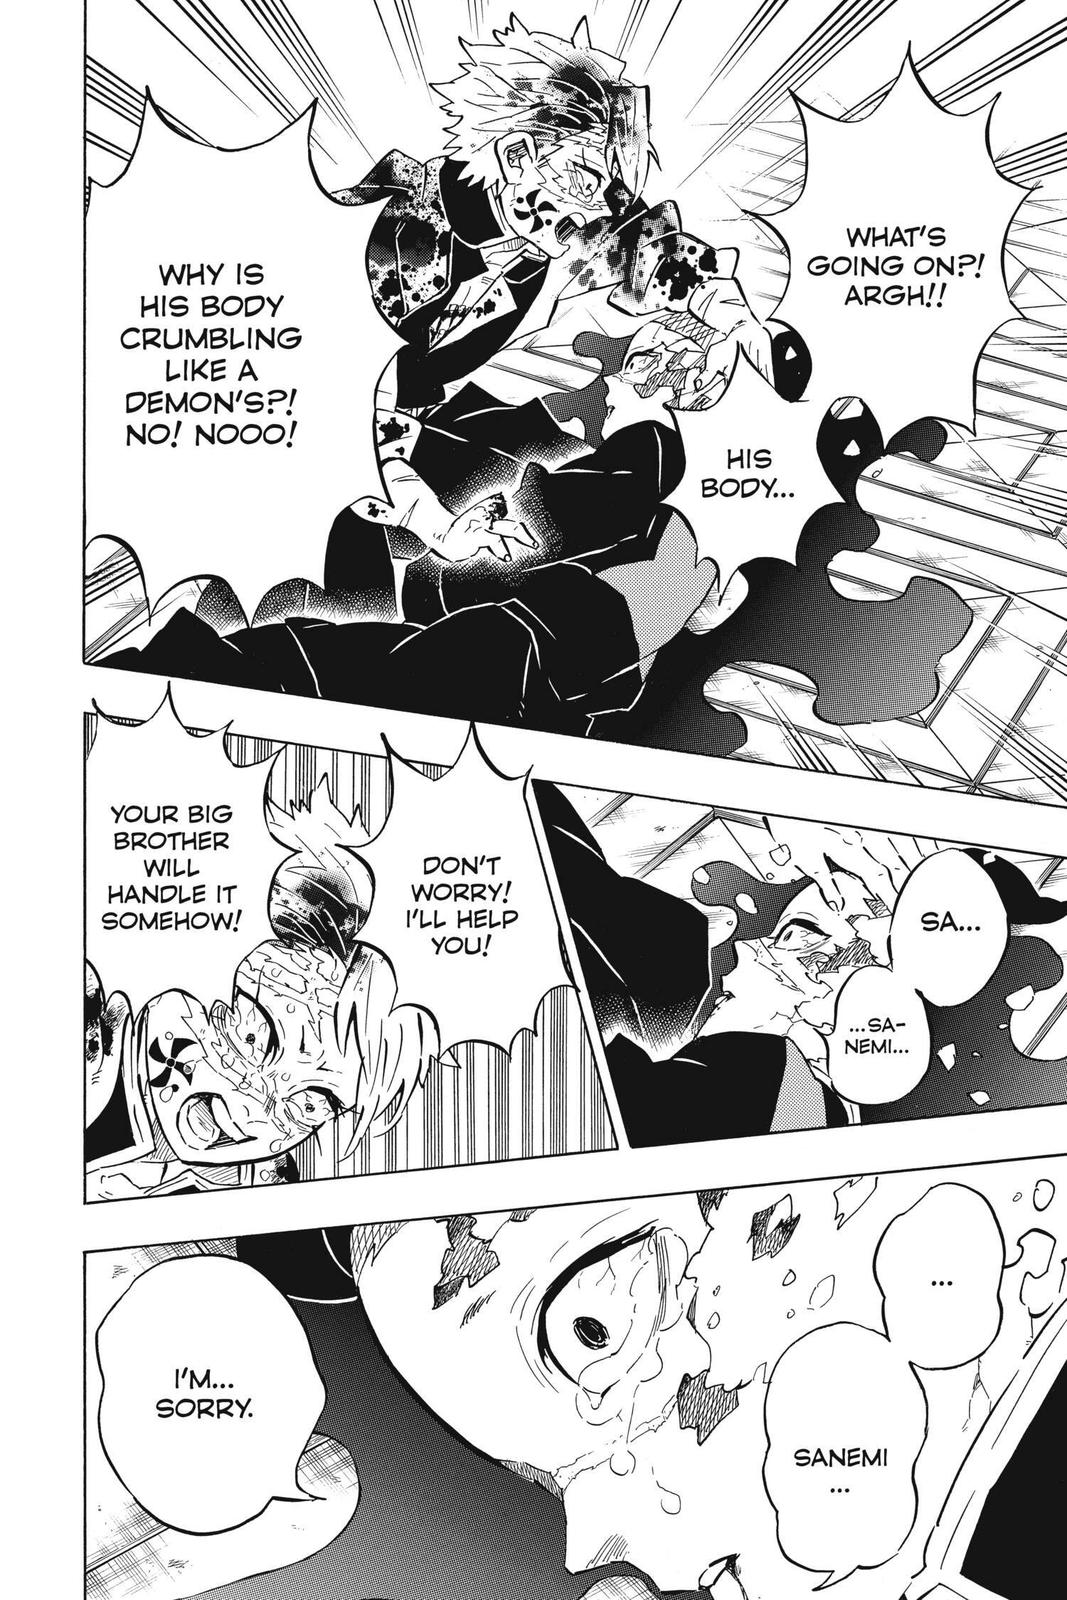 Demon Slayer Manga Manga Chapter - 179 - image 9